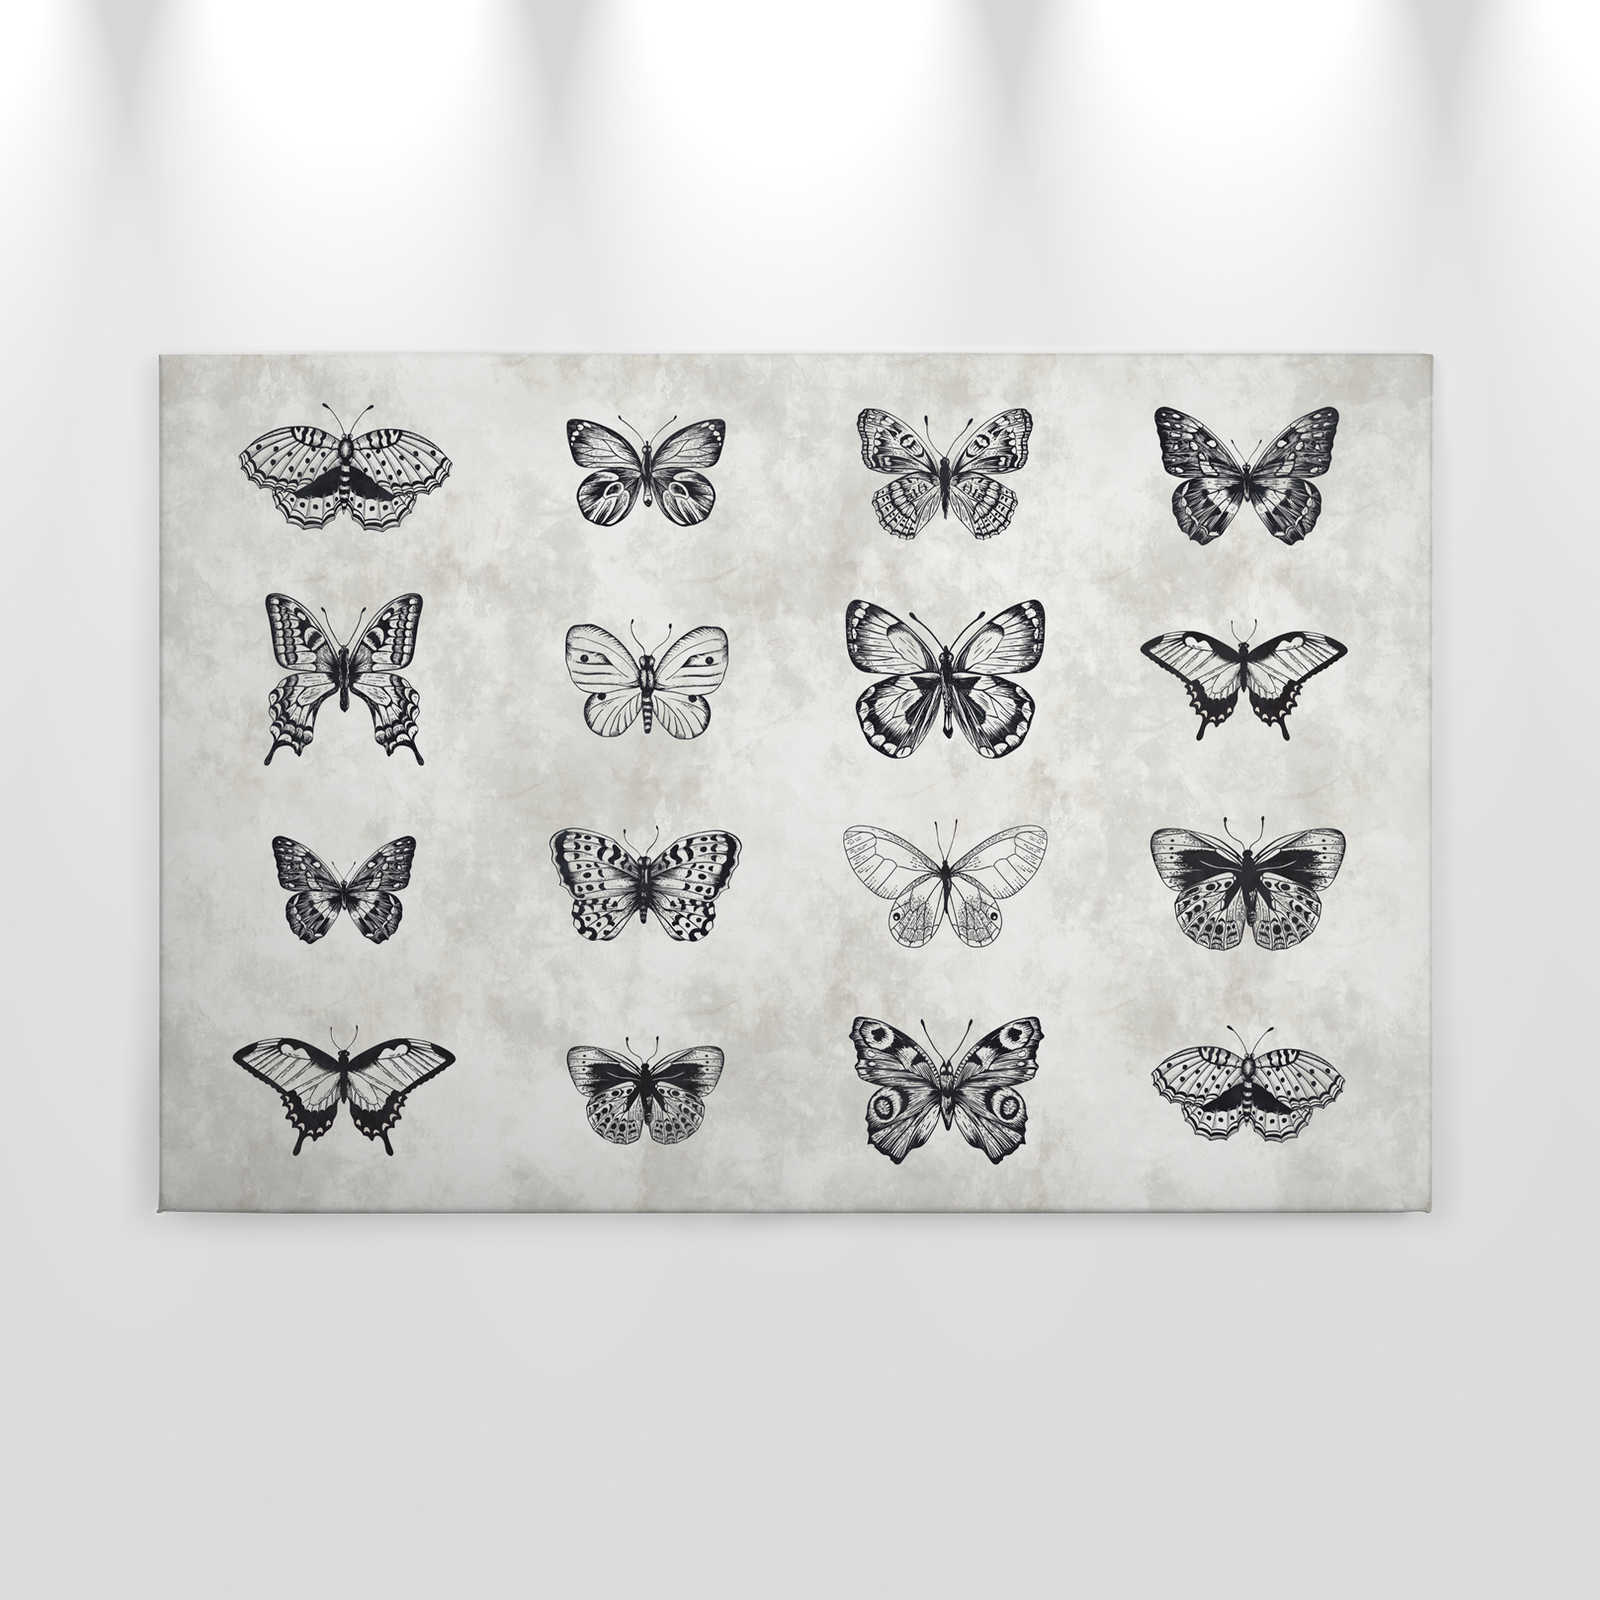             Lienzo Mariposa Dibujos Blanco y Negro - 0.90 m x 0.60 m
        